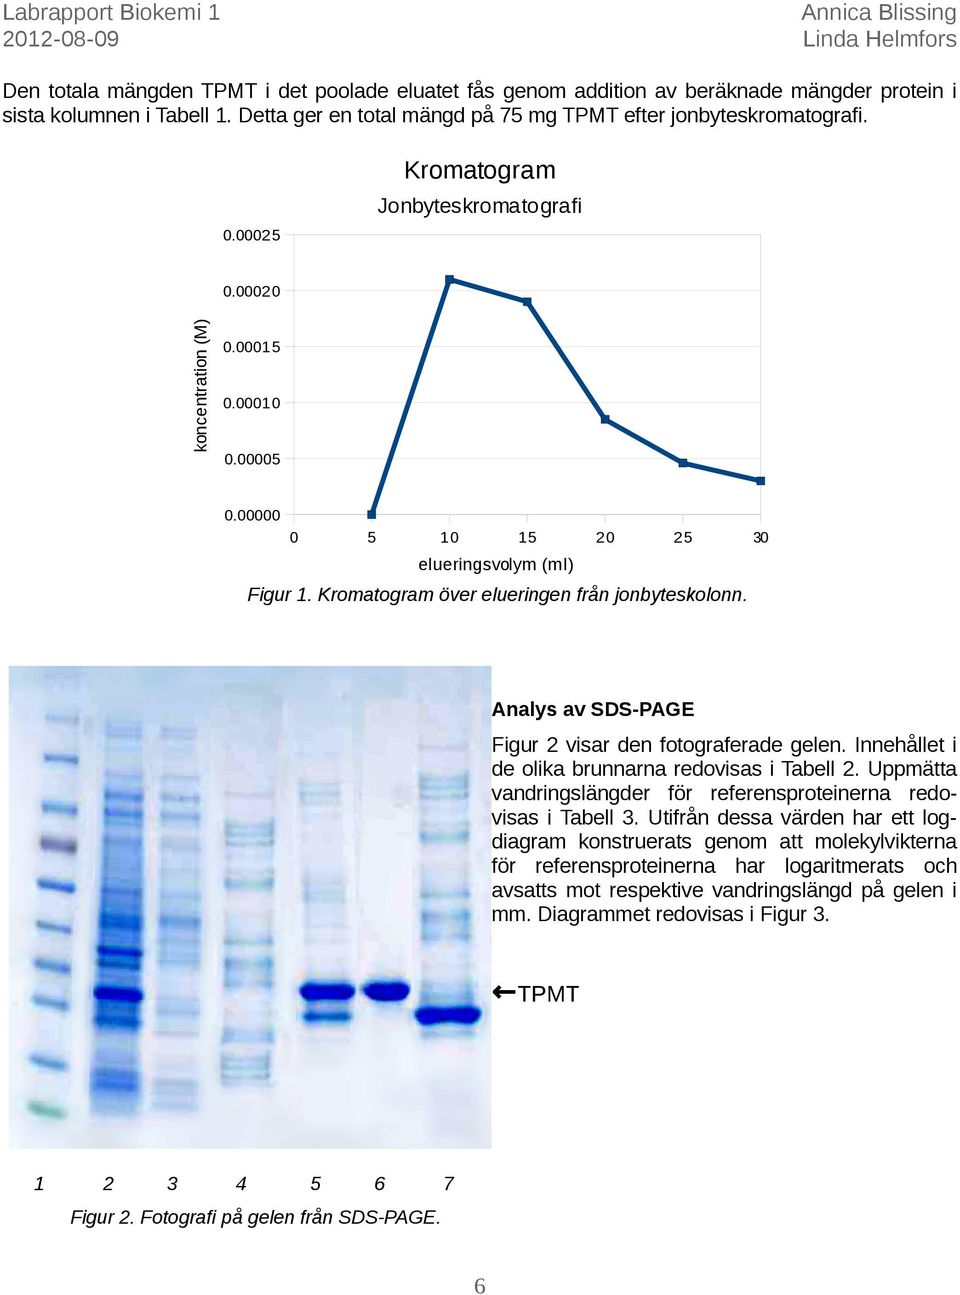 Analys av SDS-PAGE Figur 2 visar den fotograferade gelen. Innehållet i de olika brunnarna redovisas i Tabell 2. Uppmätta vandringslängder för referensproteinerna redovisas i Tabell 3.